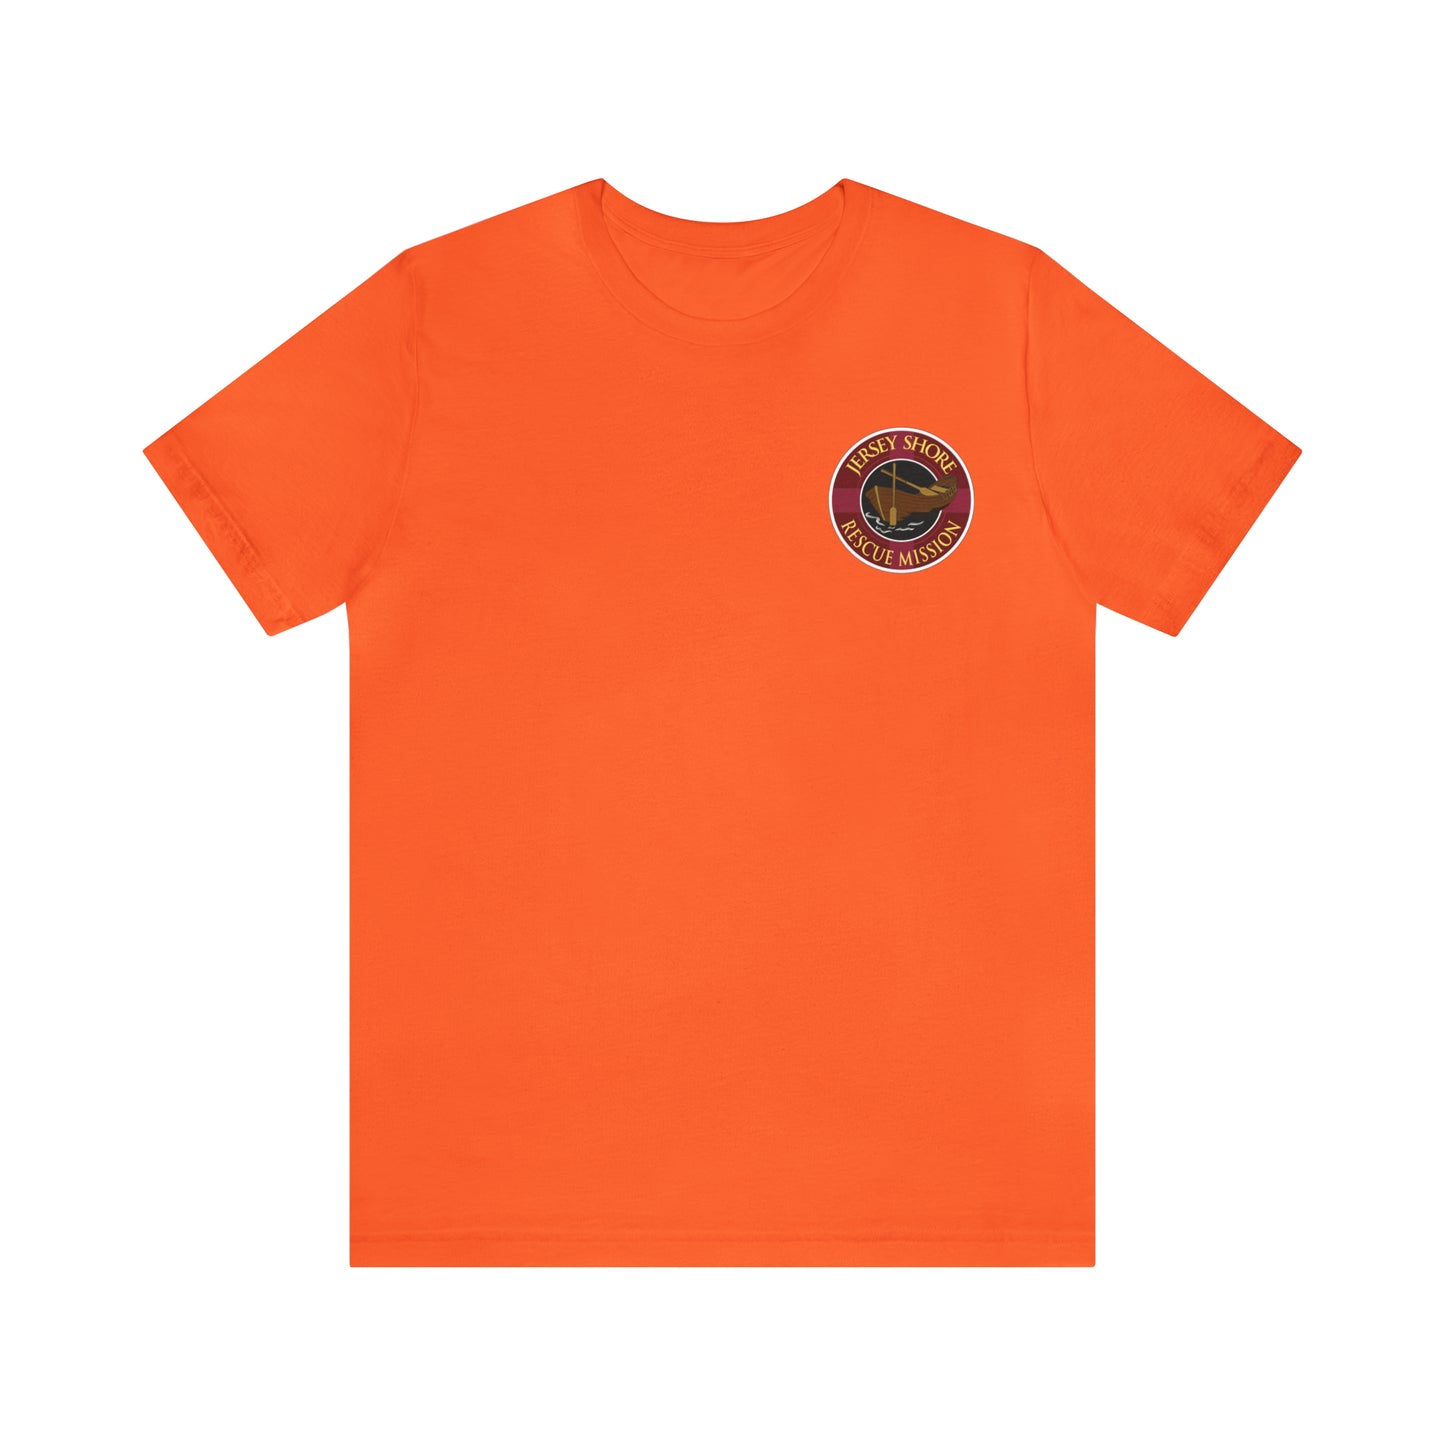 JSRM Circle Logo T-Shirt - 11 Colors - BESTSELLER!